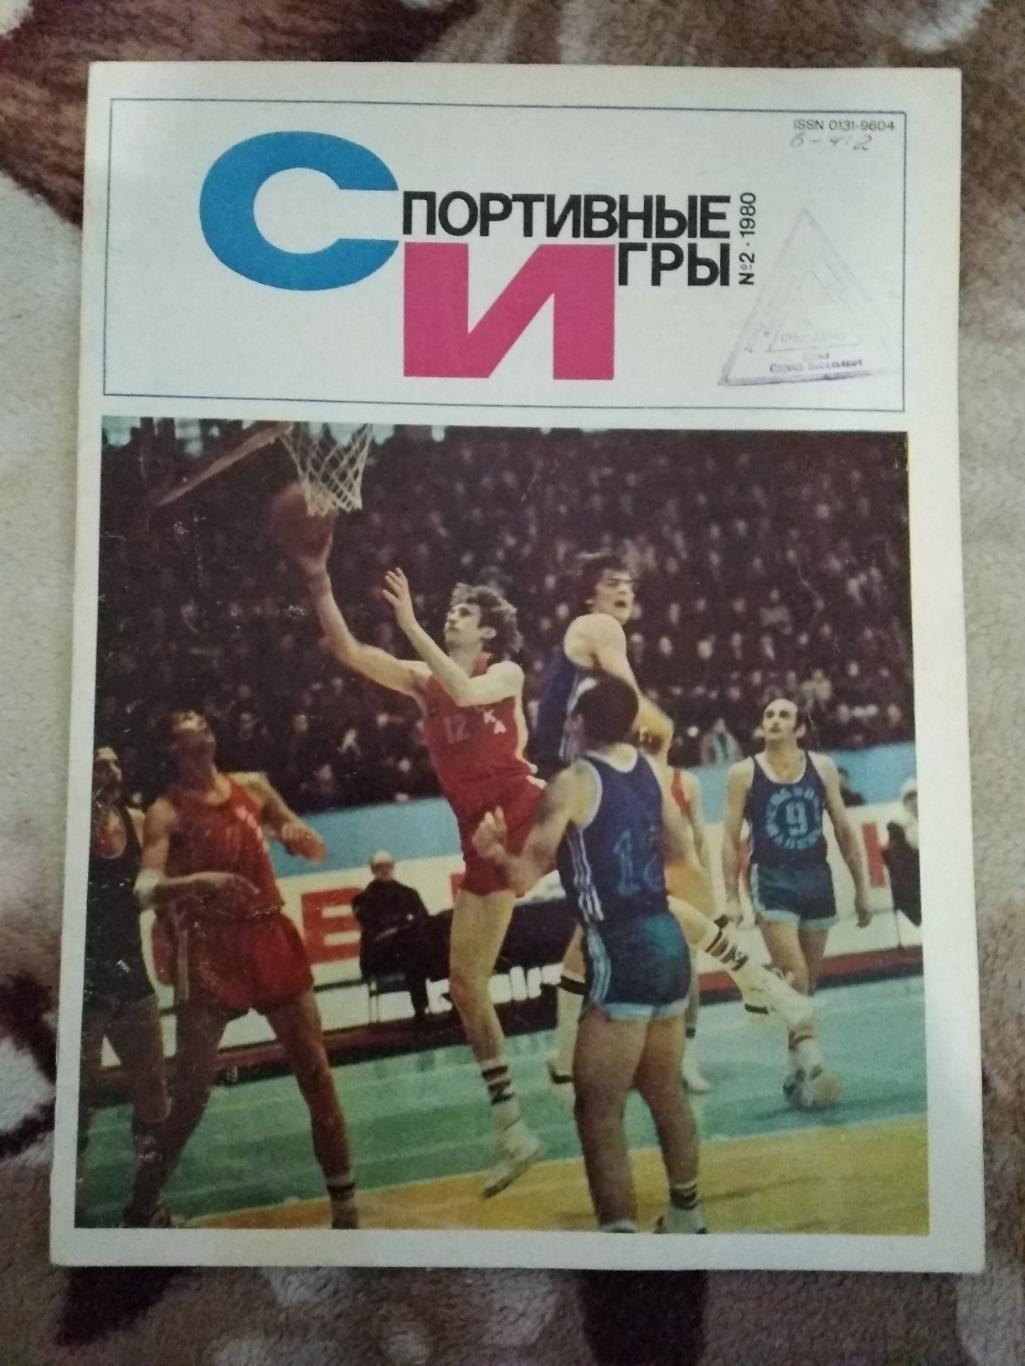 Журнал.Спортивные игры № 2 1980 г.